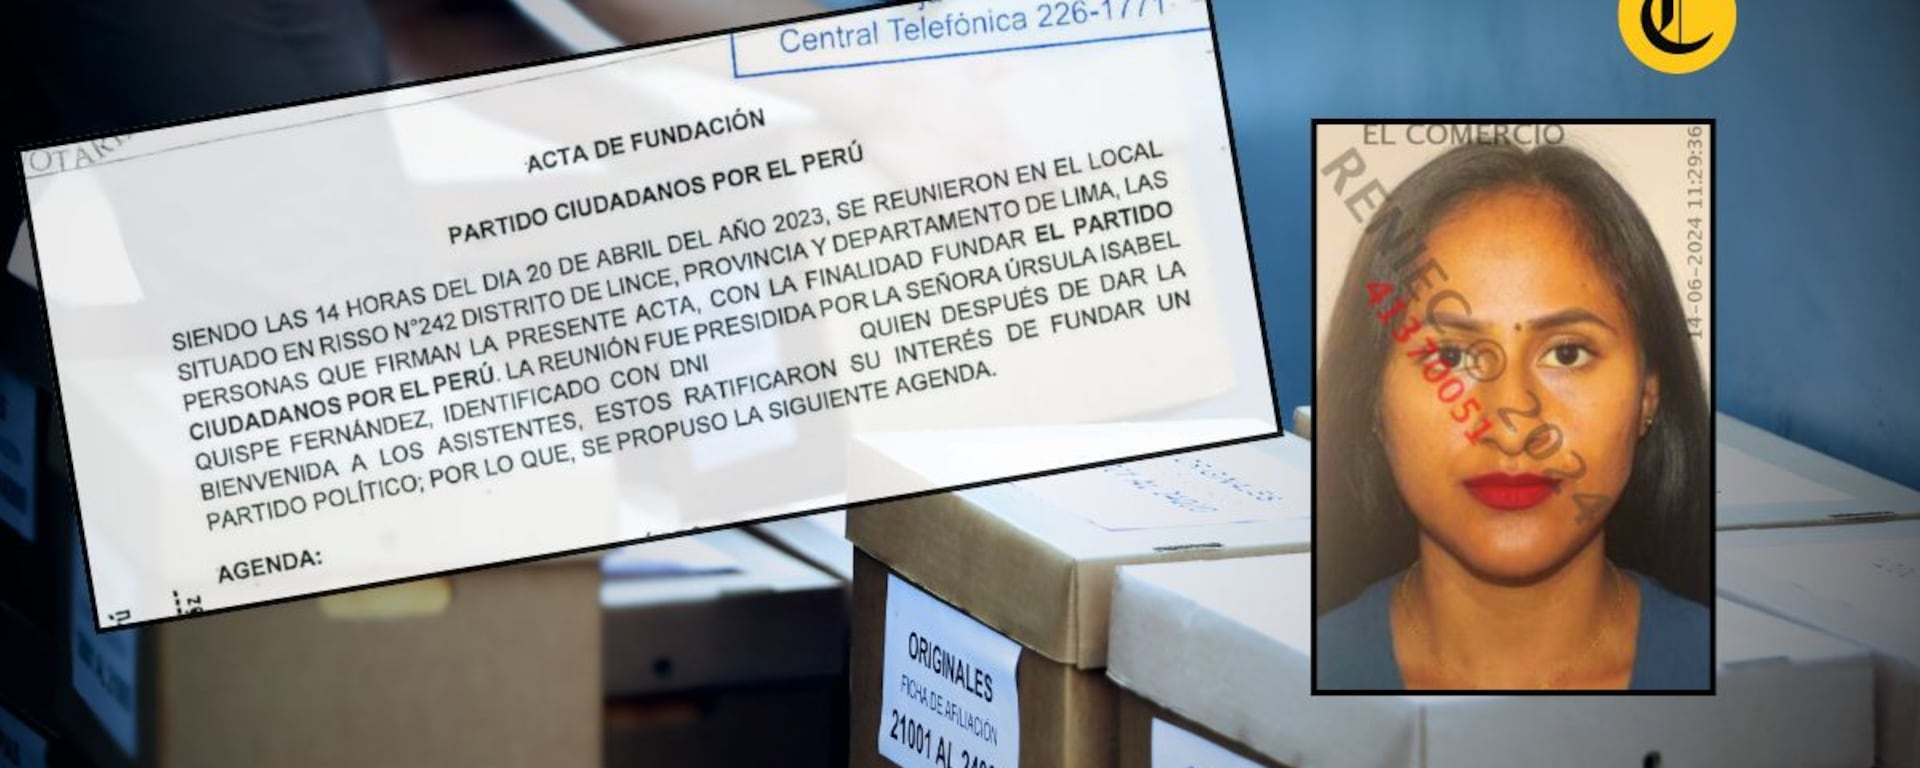 Abogada denuncia afiliación irregular en partido vinculado a Nicanor Boluarte: “Han tomado mis datos”